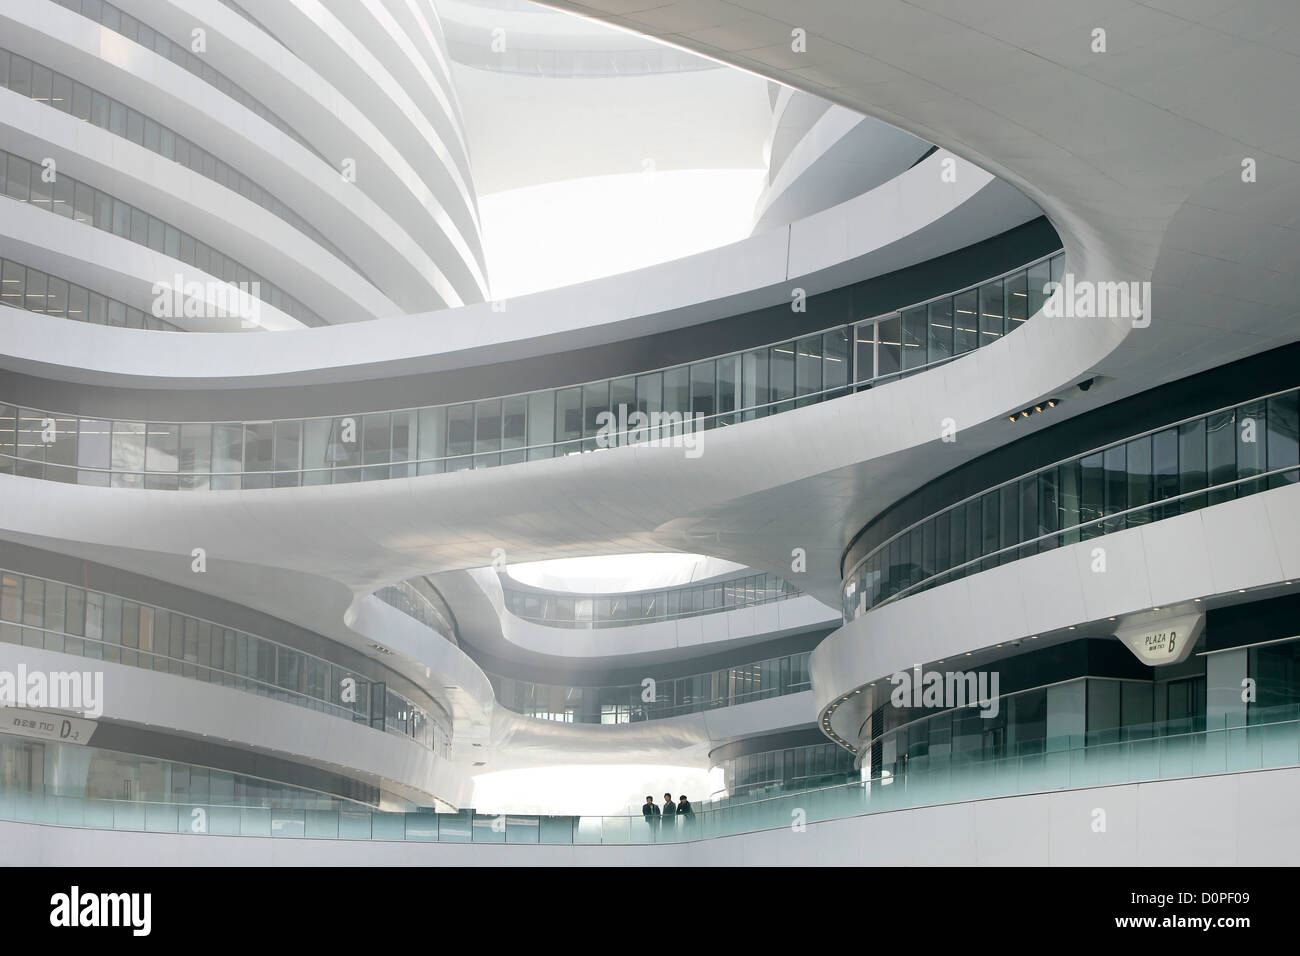 Galaxy Soho, Beijing, China. Architect: Zaha Hadid Architects, 2012. Detailed view upwards. Stock Photo